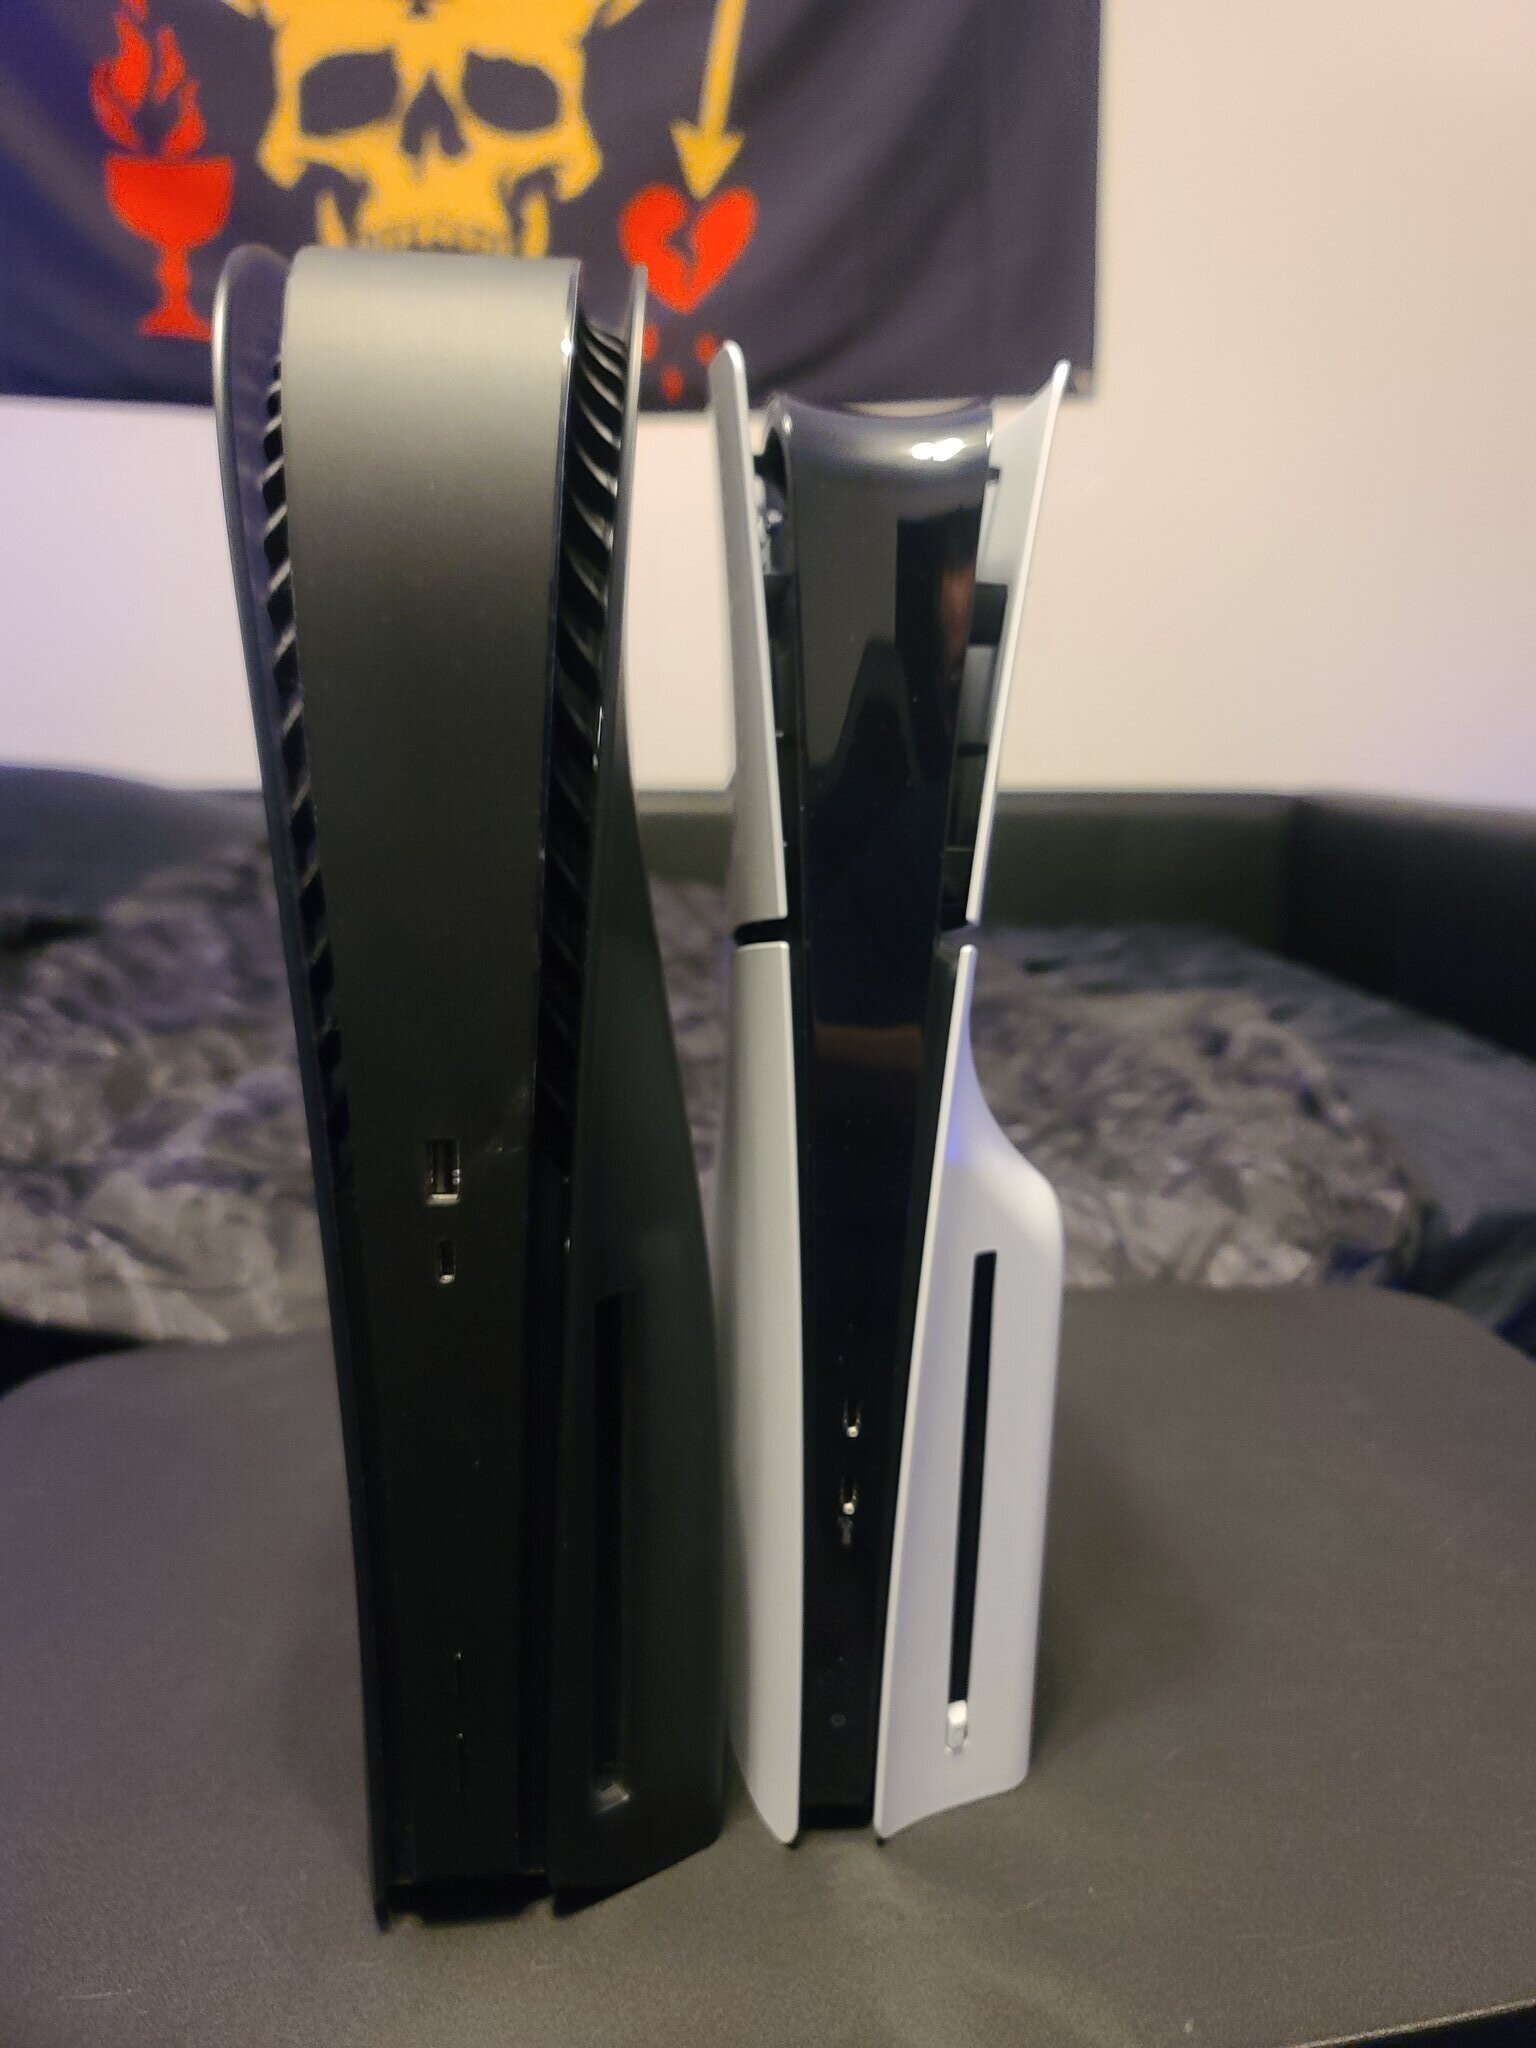 Появились реальные фотографии PS5 Slim. На них показано, насколько она меньше, чем обычная версия